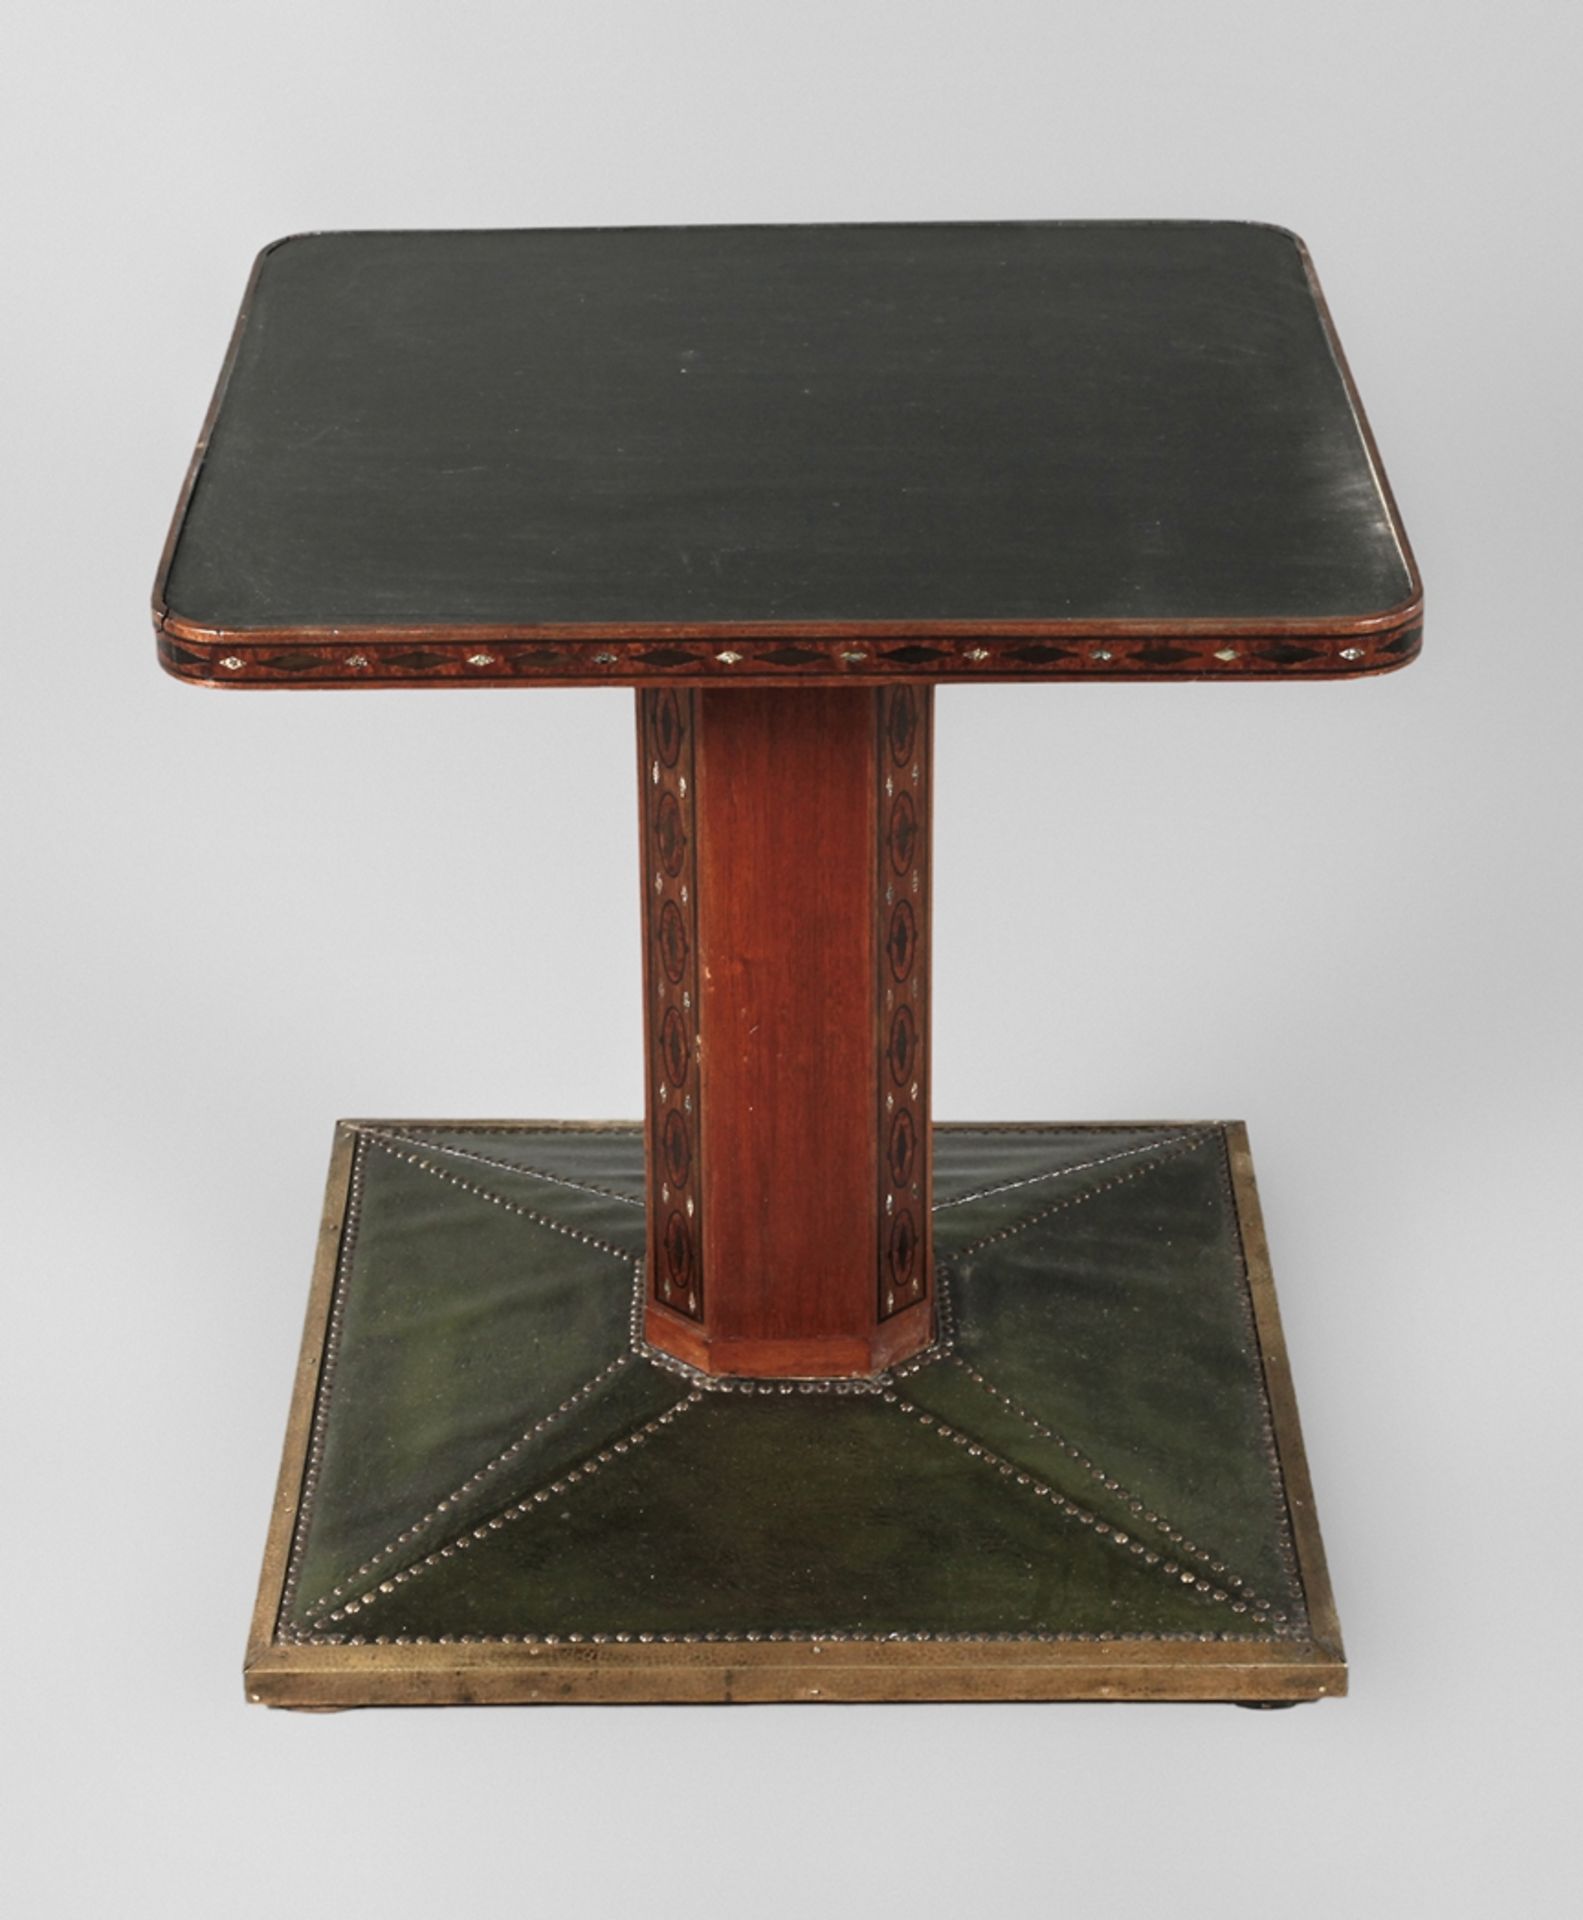 Rauchtisch Jugendstilum 1905, niedriges Tischchen auf quadratischem Fuß, Messingstoßleiste, grüne